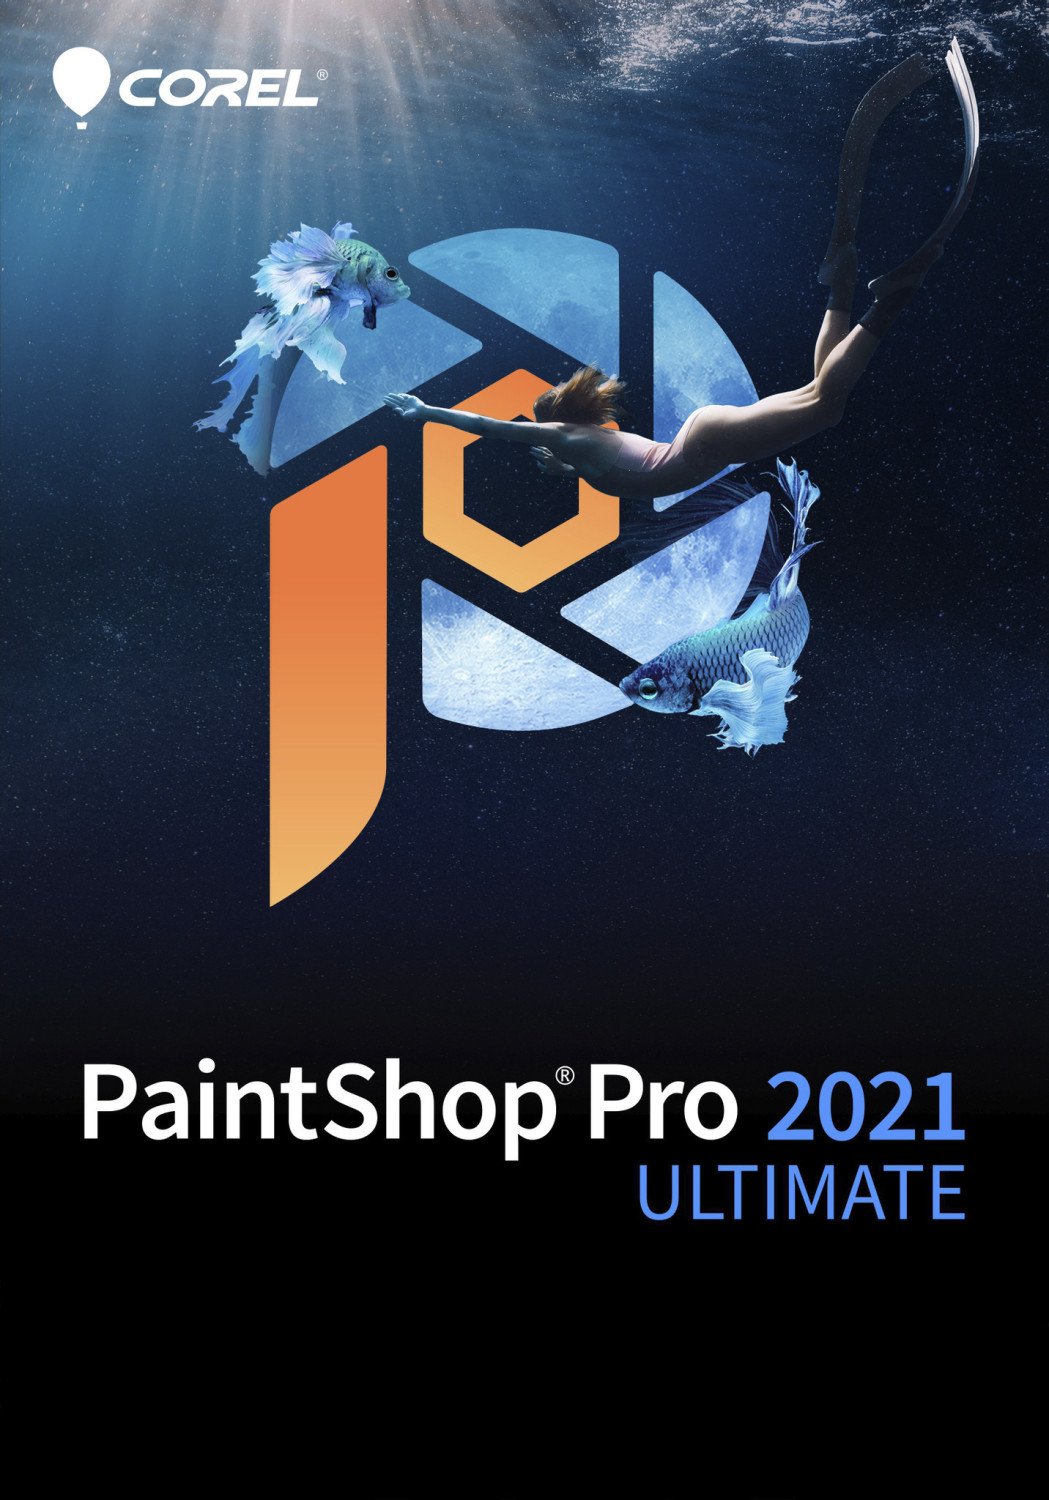 corel paintshop pro 2021